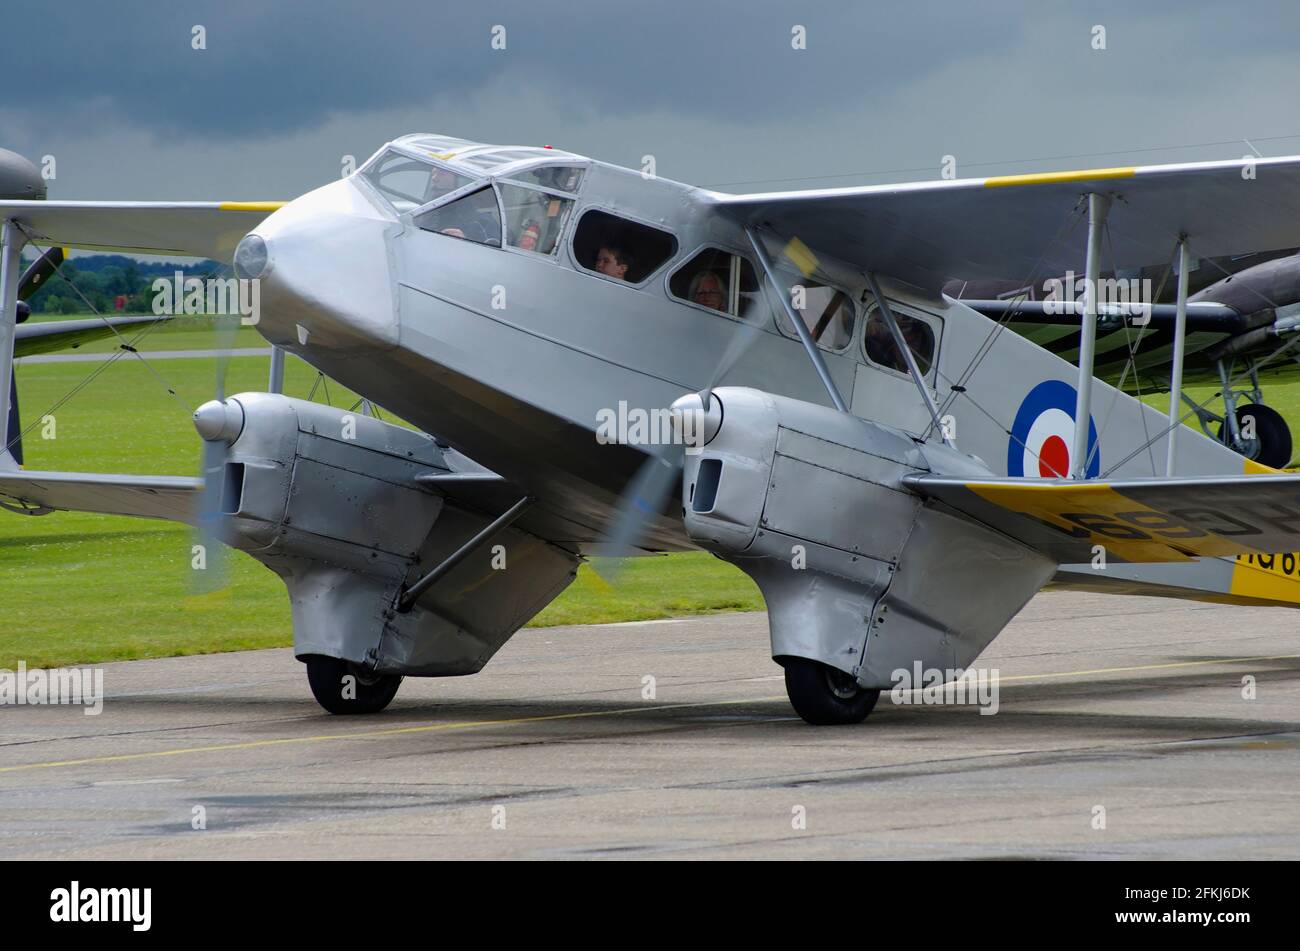 de Havilland DH 89A, Dragon Rapide, G-AIYR, HG691.at Duxford, Cambridgeshire, England, Stock Photo